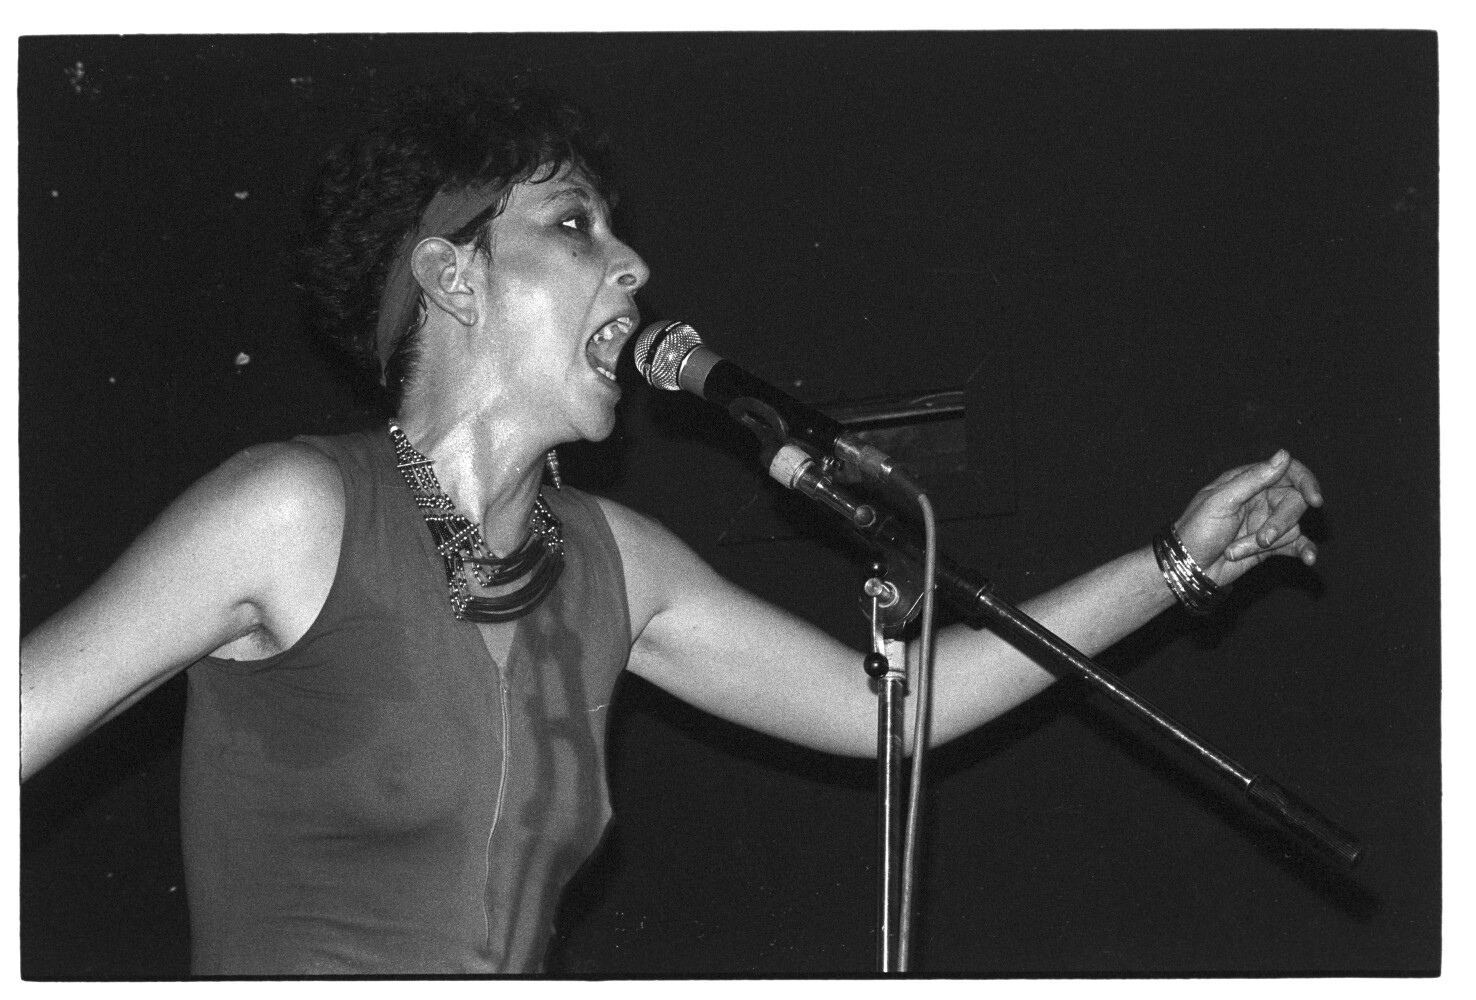 Lesley Woods 12.07.1985 [?] I N 4 (Rita Maier / Schwules Museum Berlin RR-P)